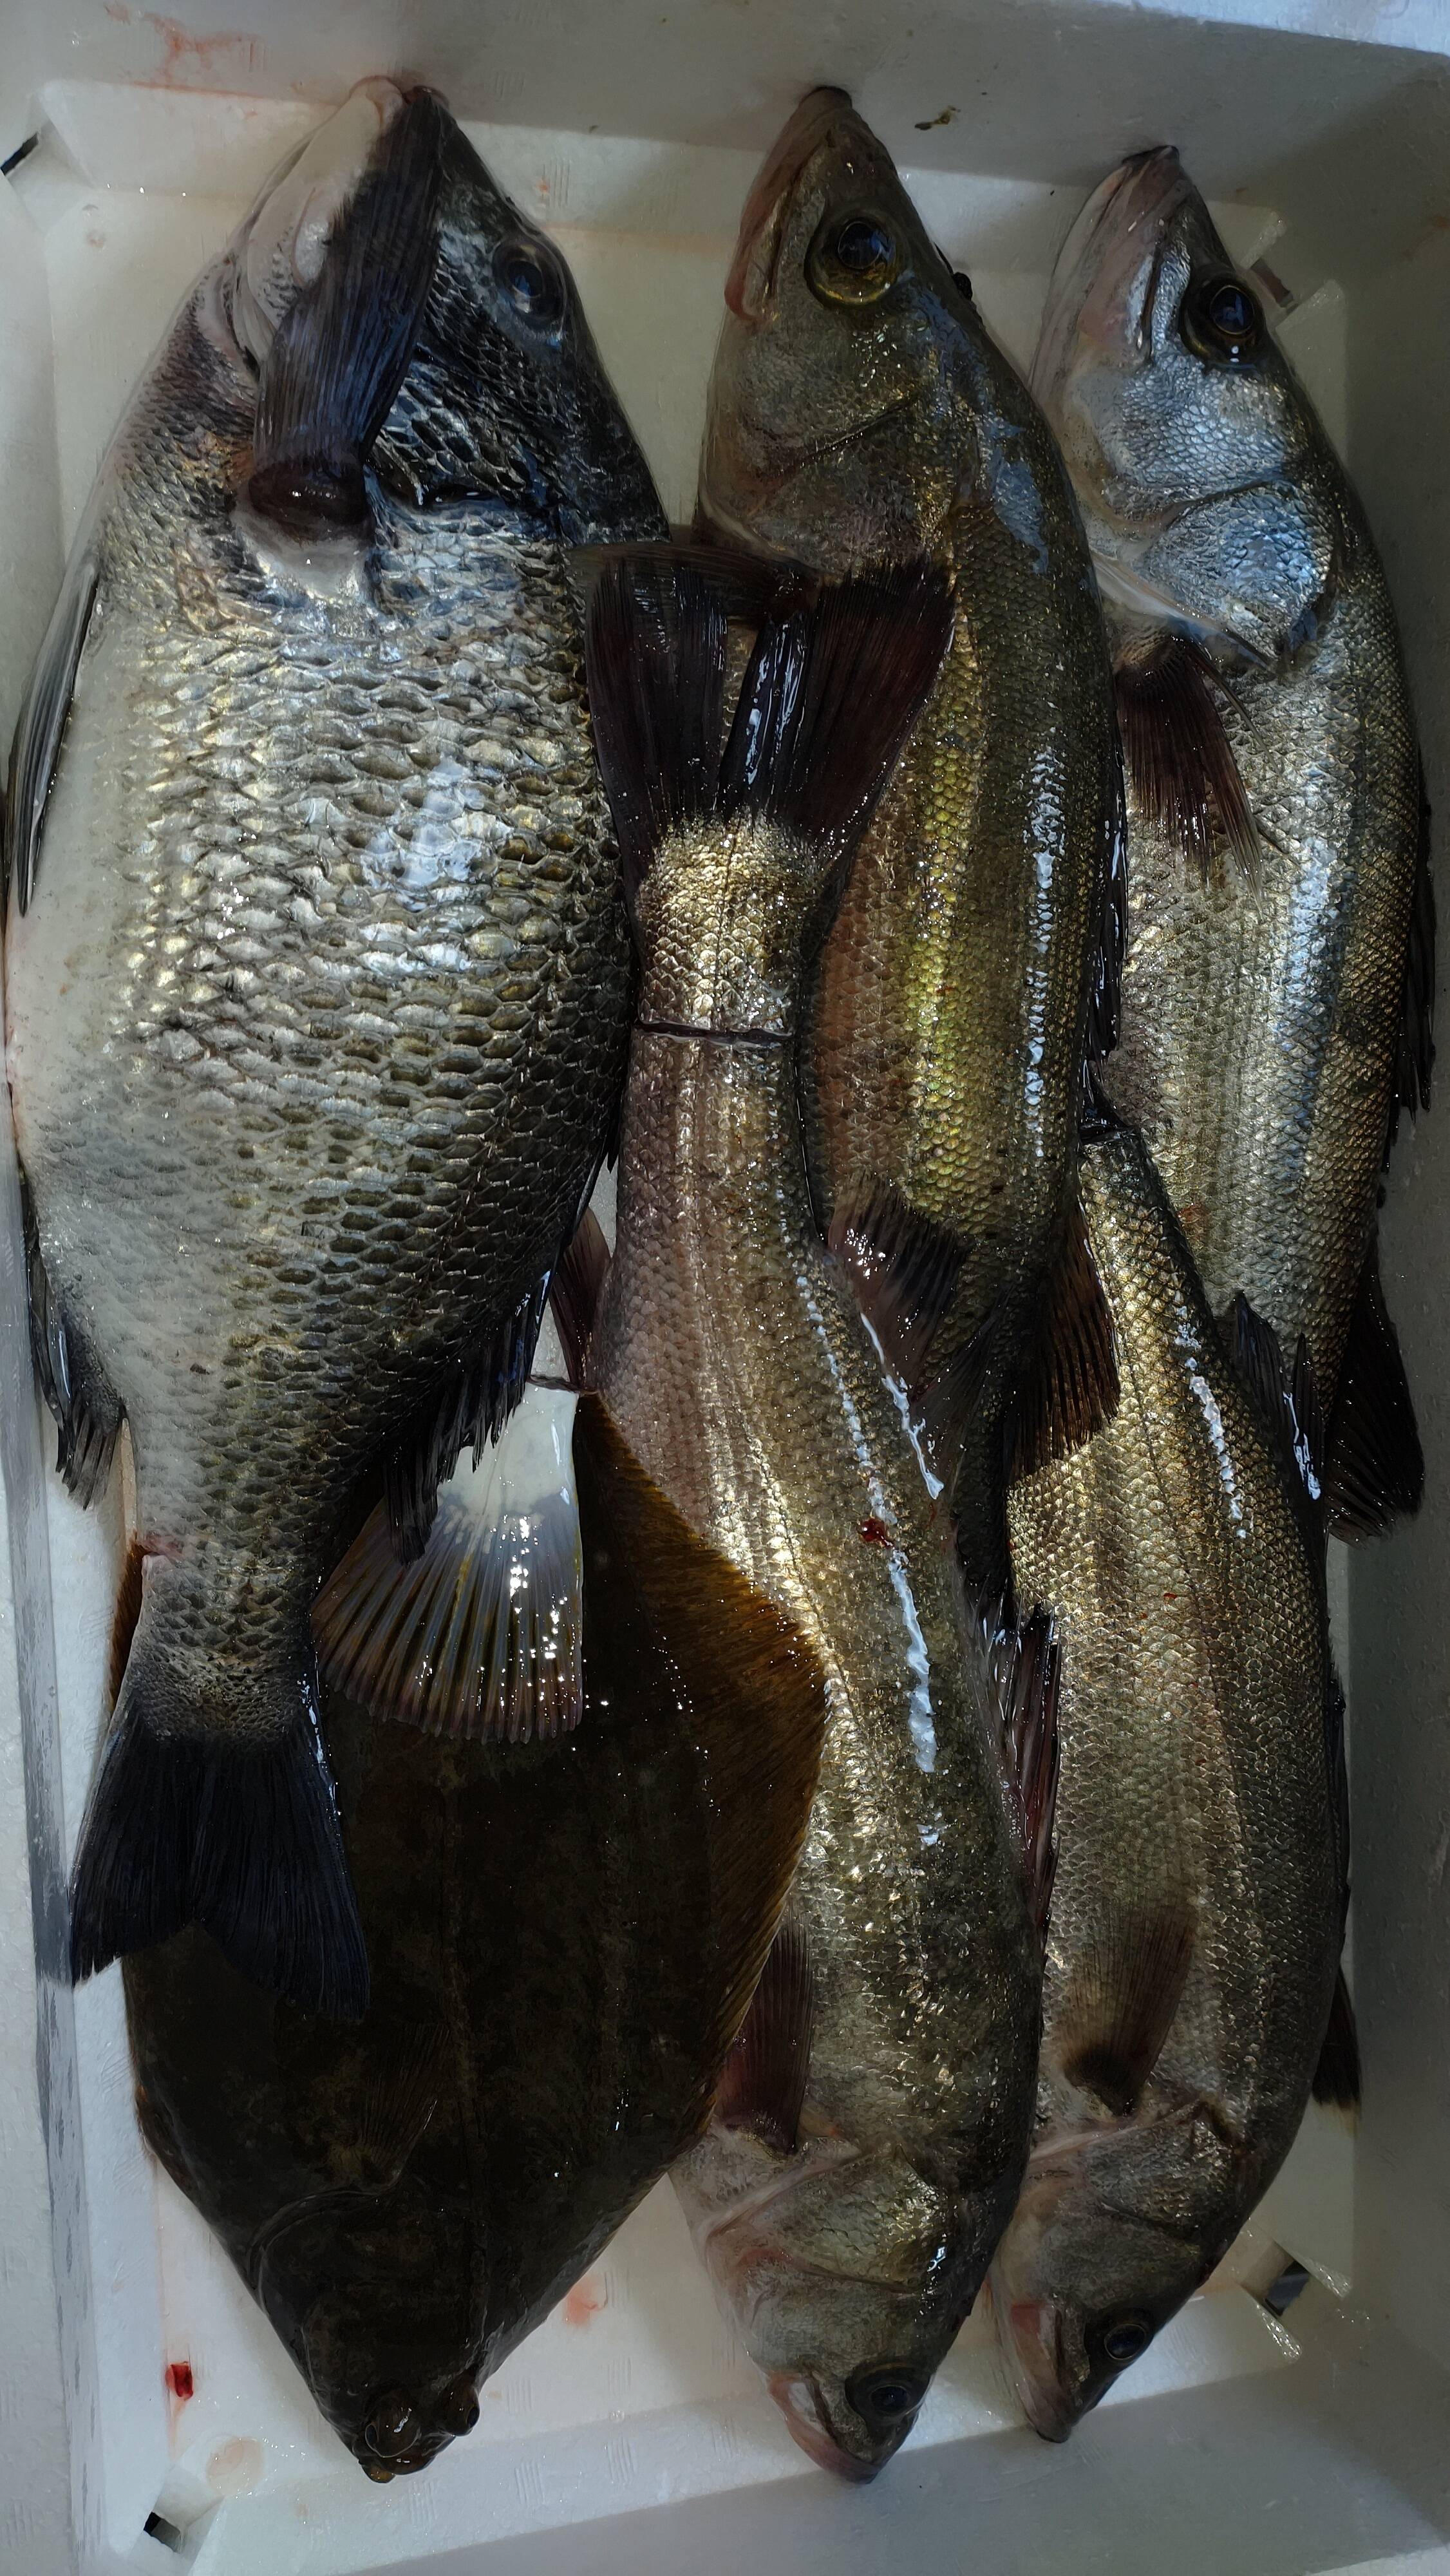 朝取れた魚達をその日のうちに発送 魚達のセット 熊本県産 食べチョク 農家 漁師の産直ネット通販 旬の食材を生産者直送